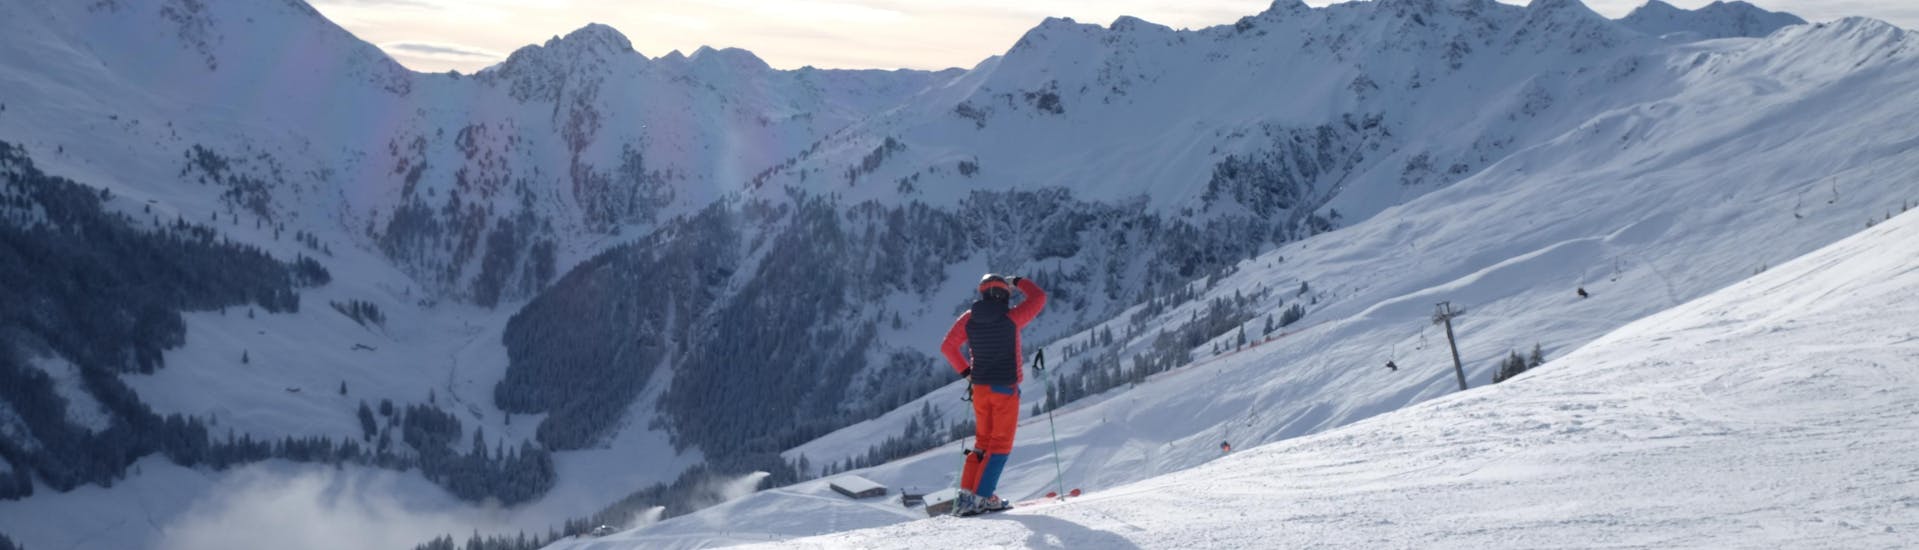 Ausblick auf die sonnige Berglandschaft beim Skifahren lernen mit den Skischulen in Alpbach-Inneralpbach.